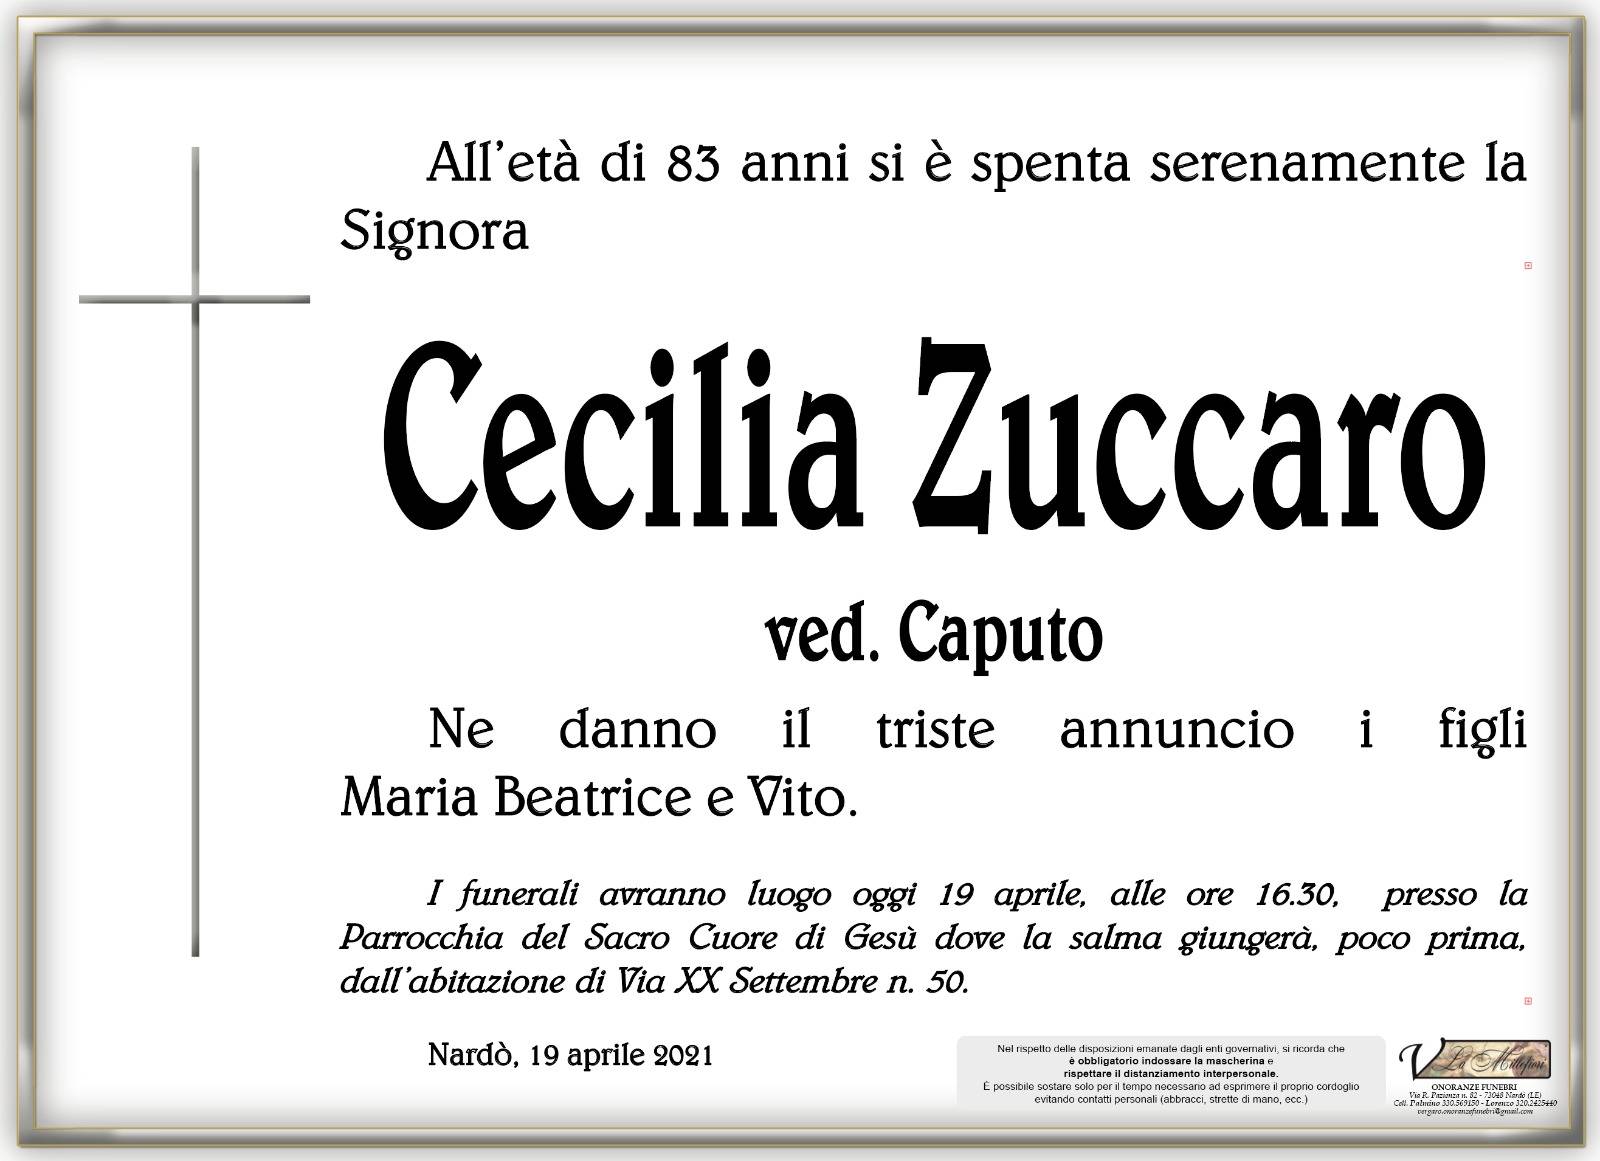 Cecilia Zuccaro